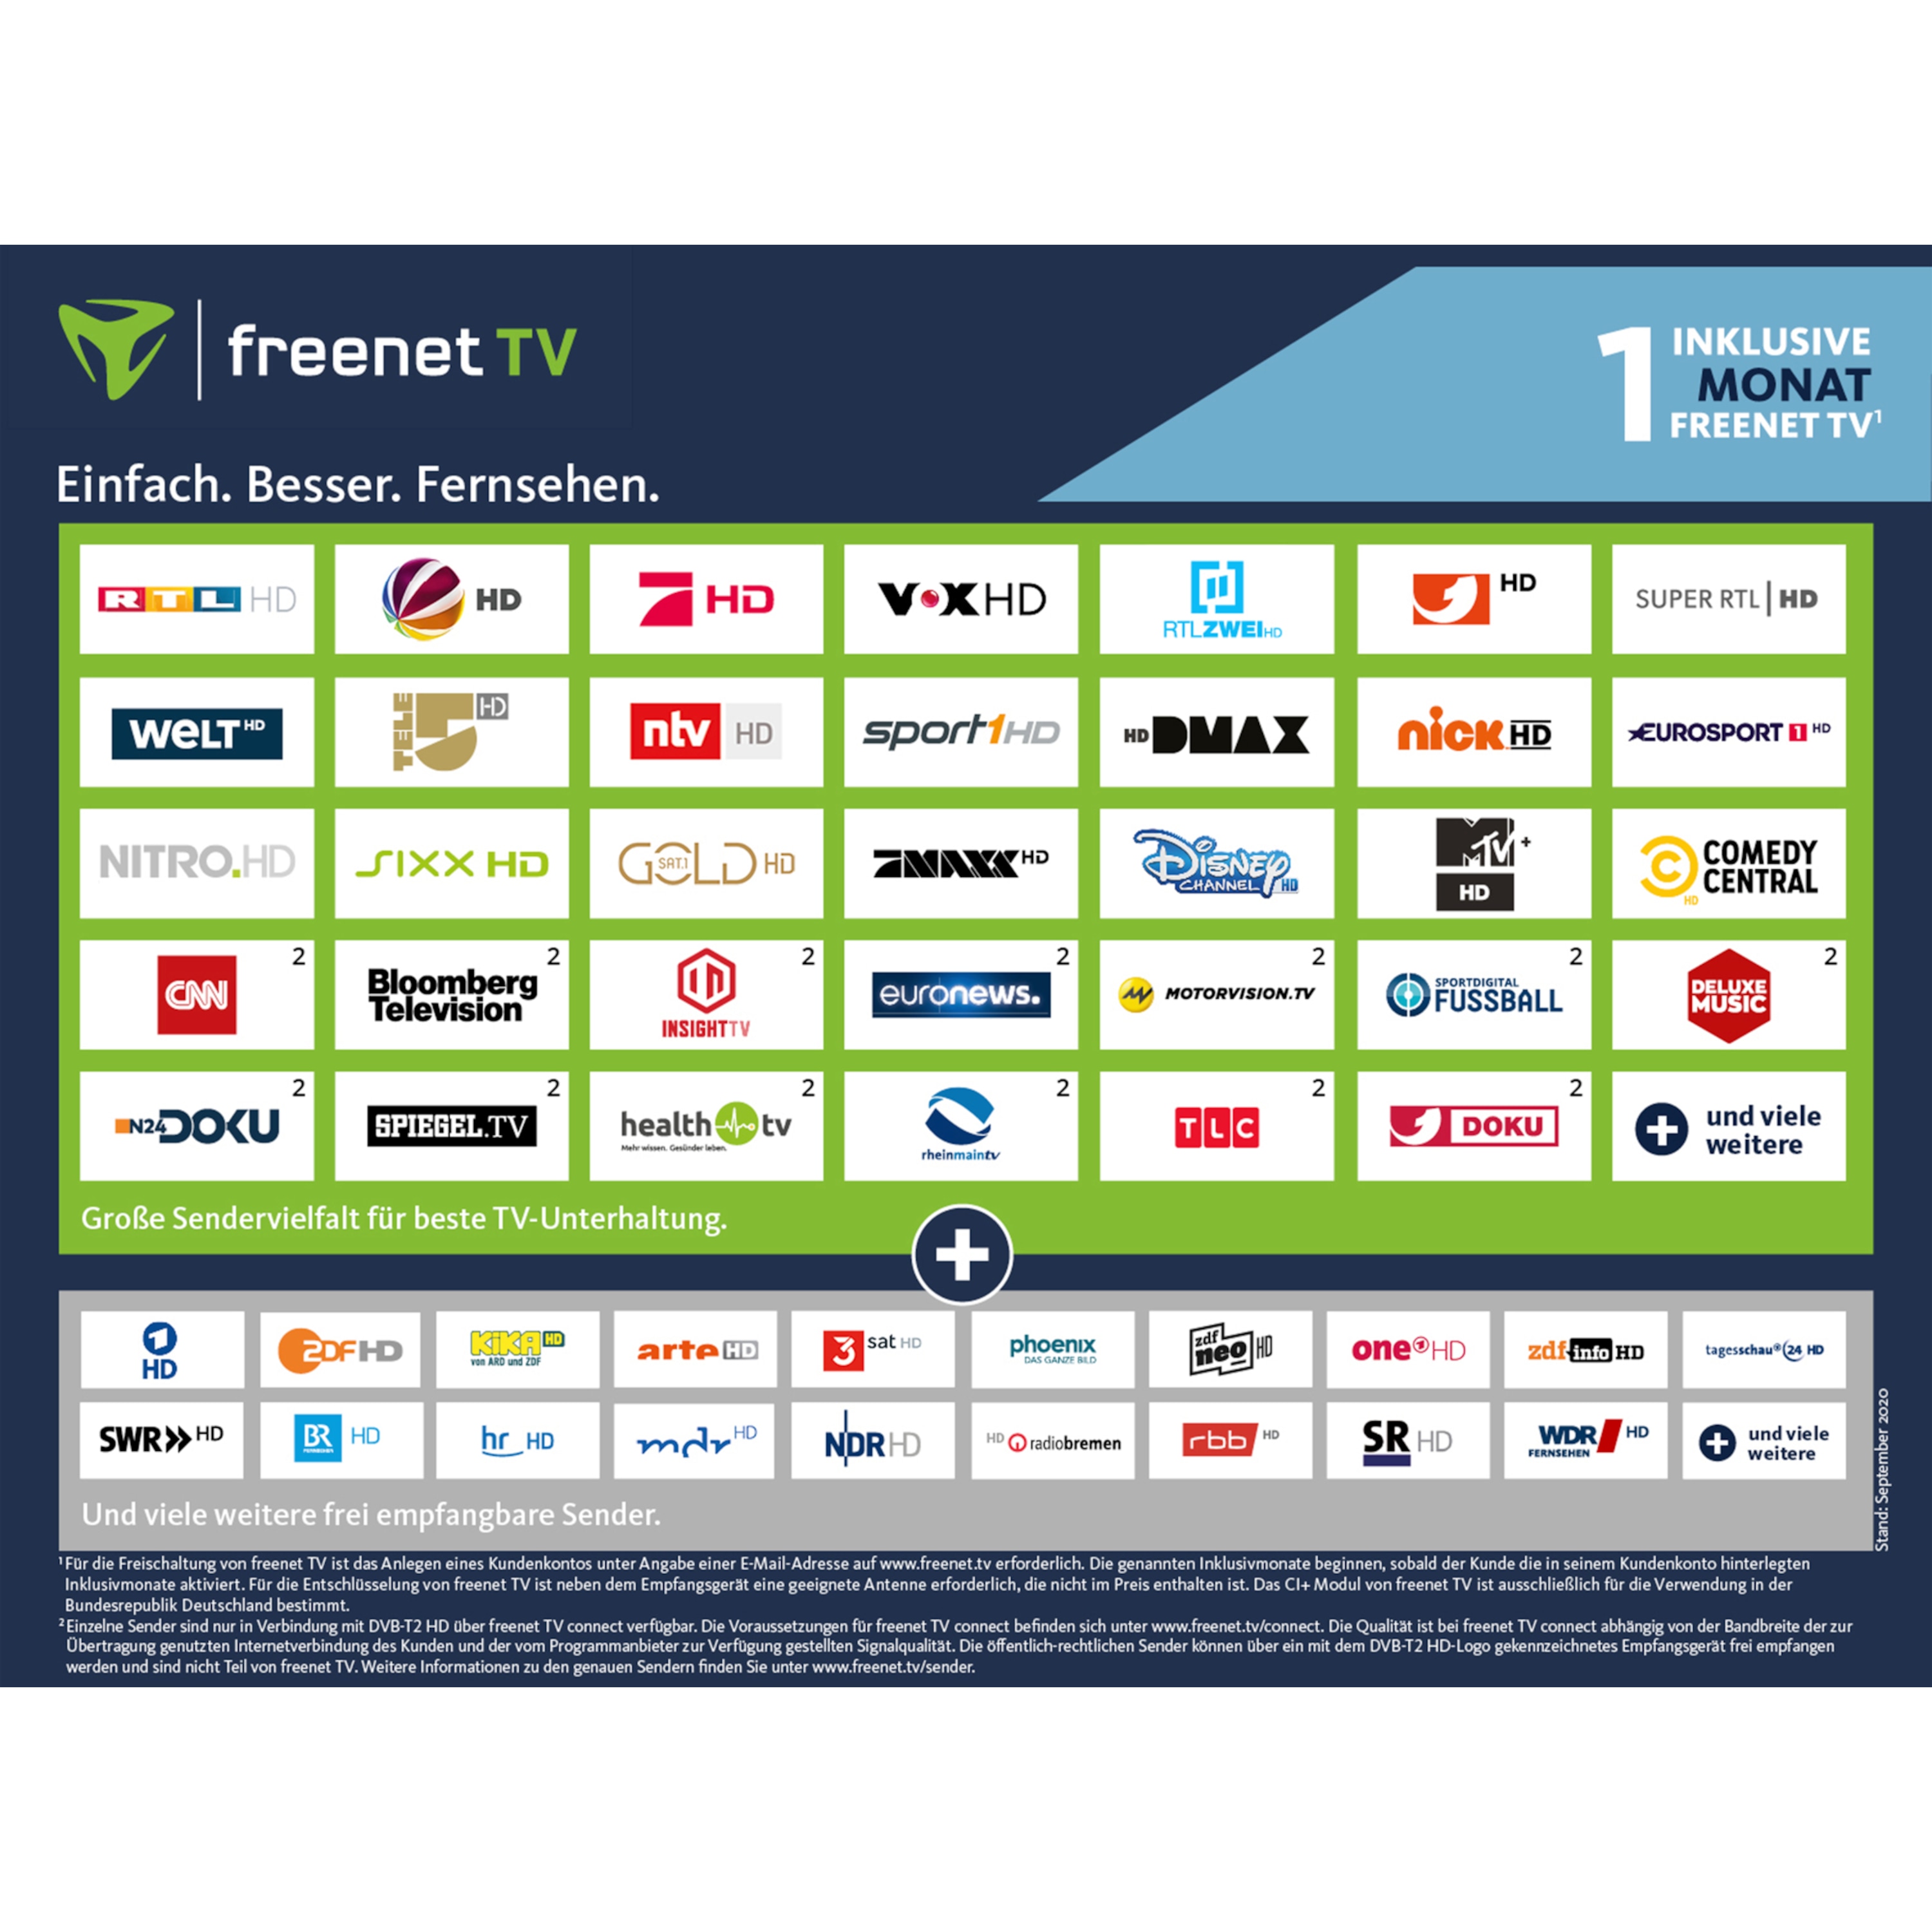 TELESTAR freenet TV CI+ Modul, für DVB-T2 HD und 4K/UHD geeignete Geräte, ermöglicht den Empfang via DVB-T2 HD ausgestrahlter verschlüsselter TV-Programme im Rahmen des freenet TV Angebotes, inkl. 1 Monat freenet TV